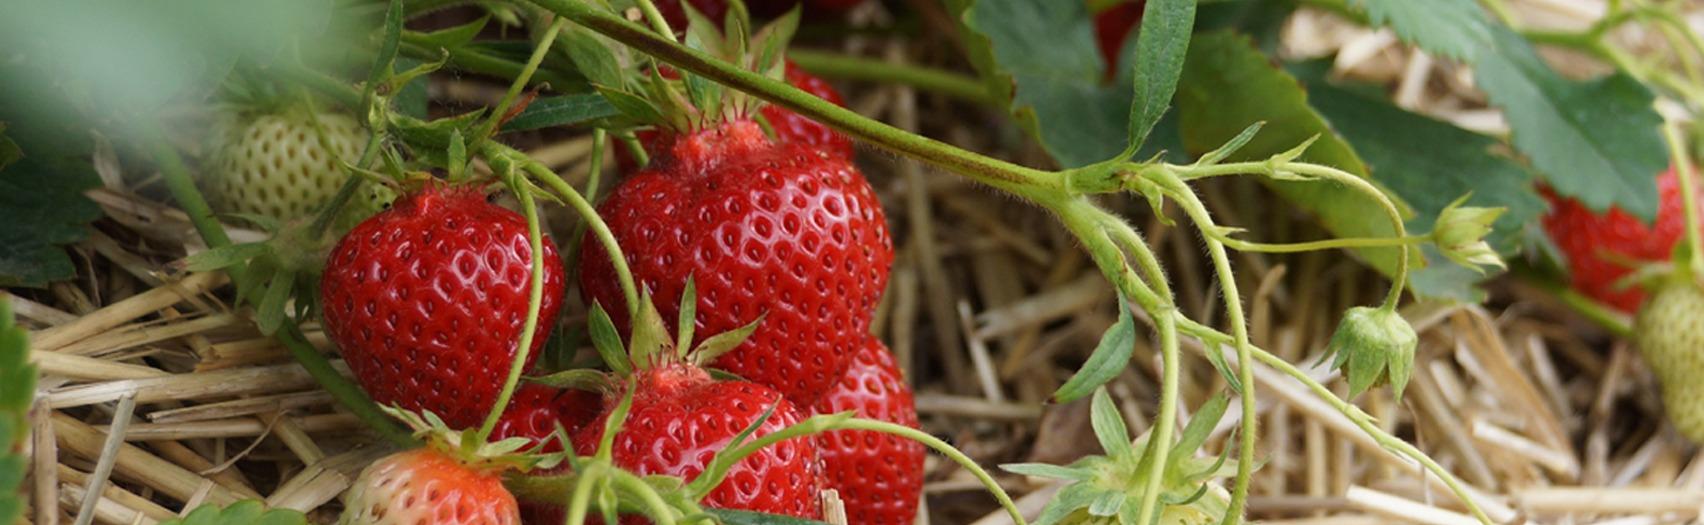 Heeman's Summer strawberries